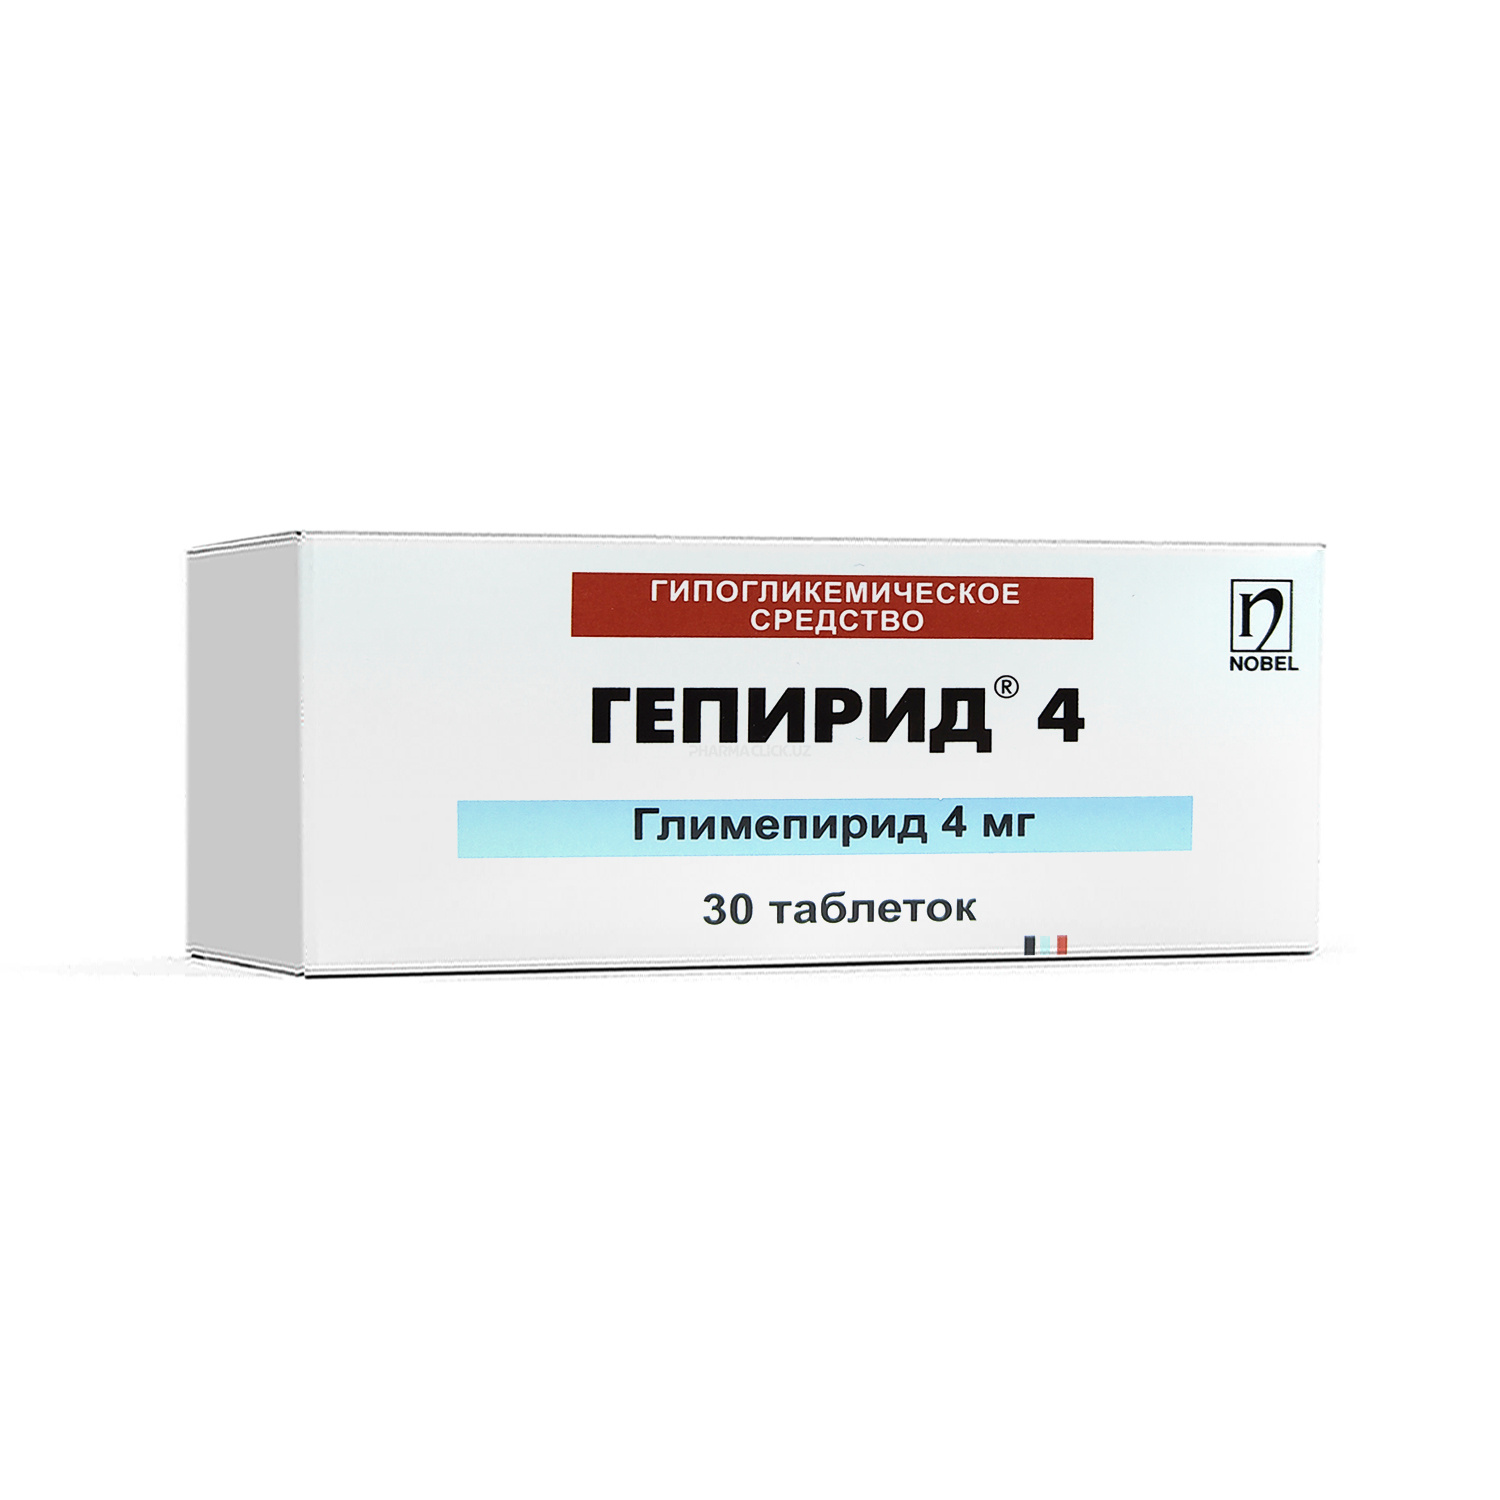 Gepirid 4 mg tab. №30